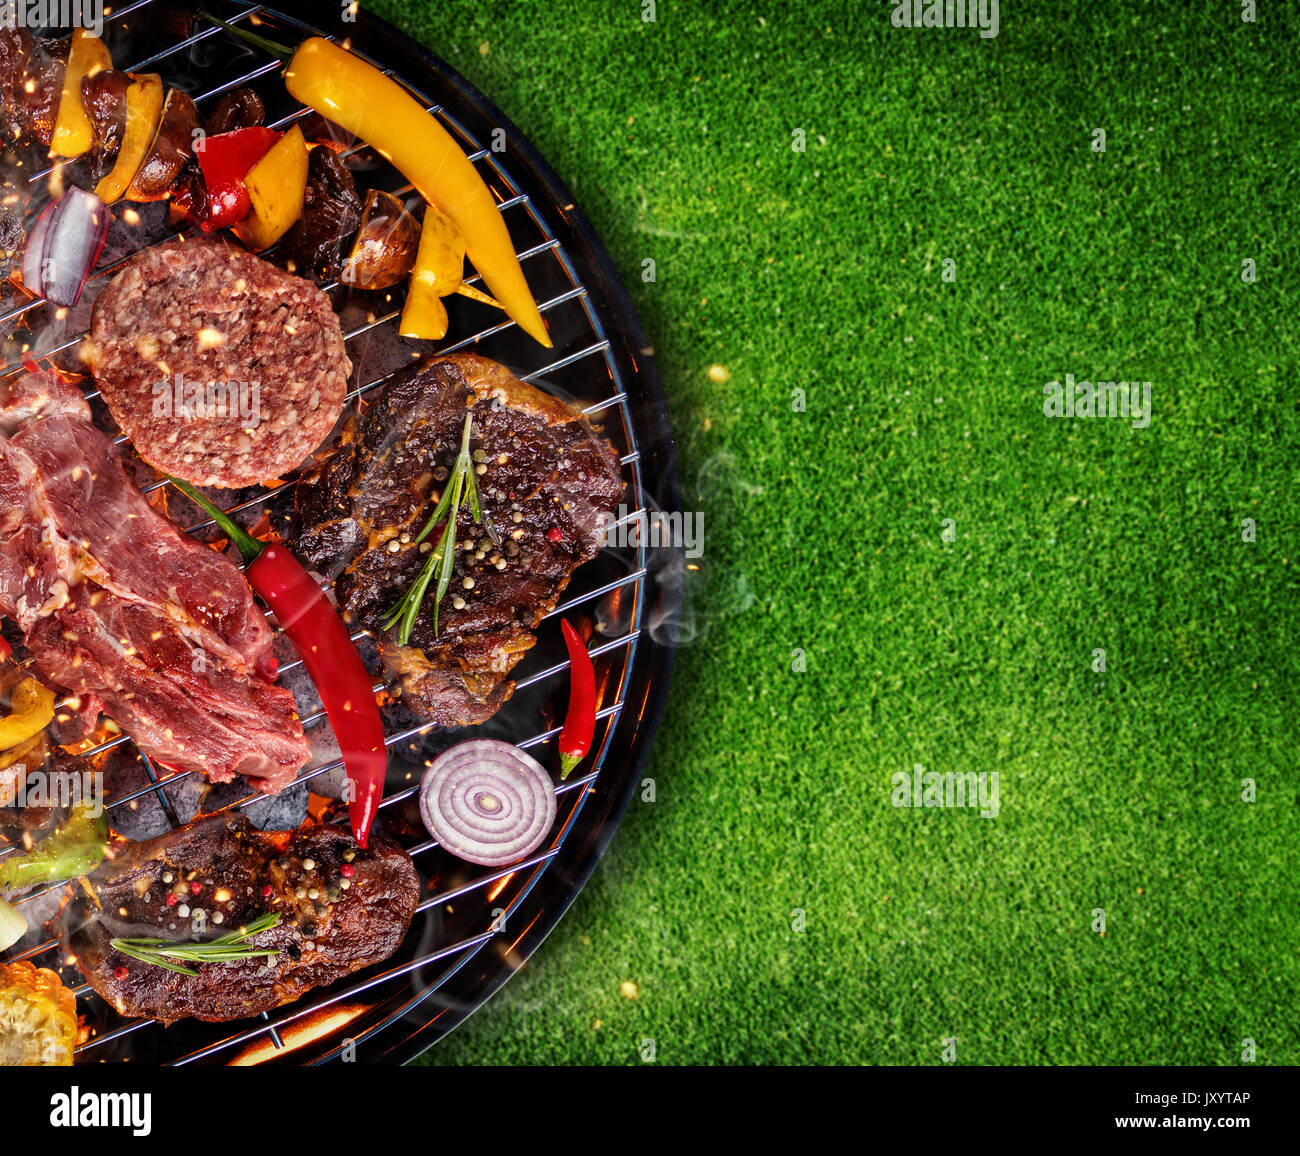 Blick von oben auf die frisches Fleisch und Gemüse vom Grill auf Gras gelegt. Grill, Grill und Essen Konzept Stockfoto